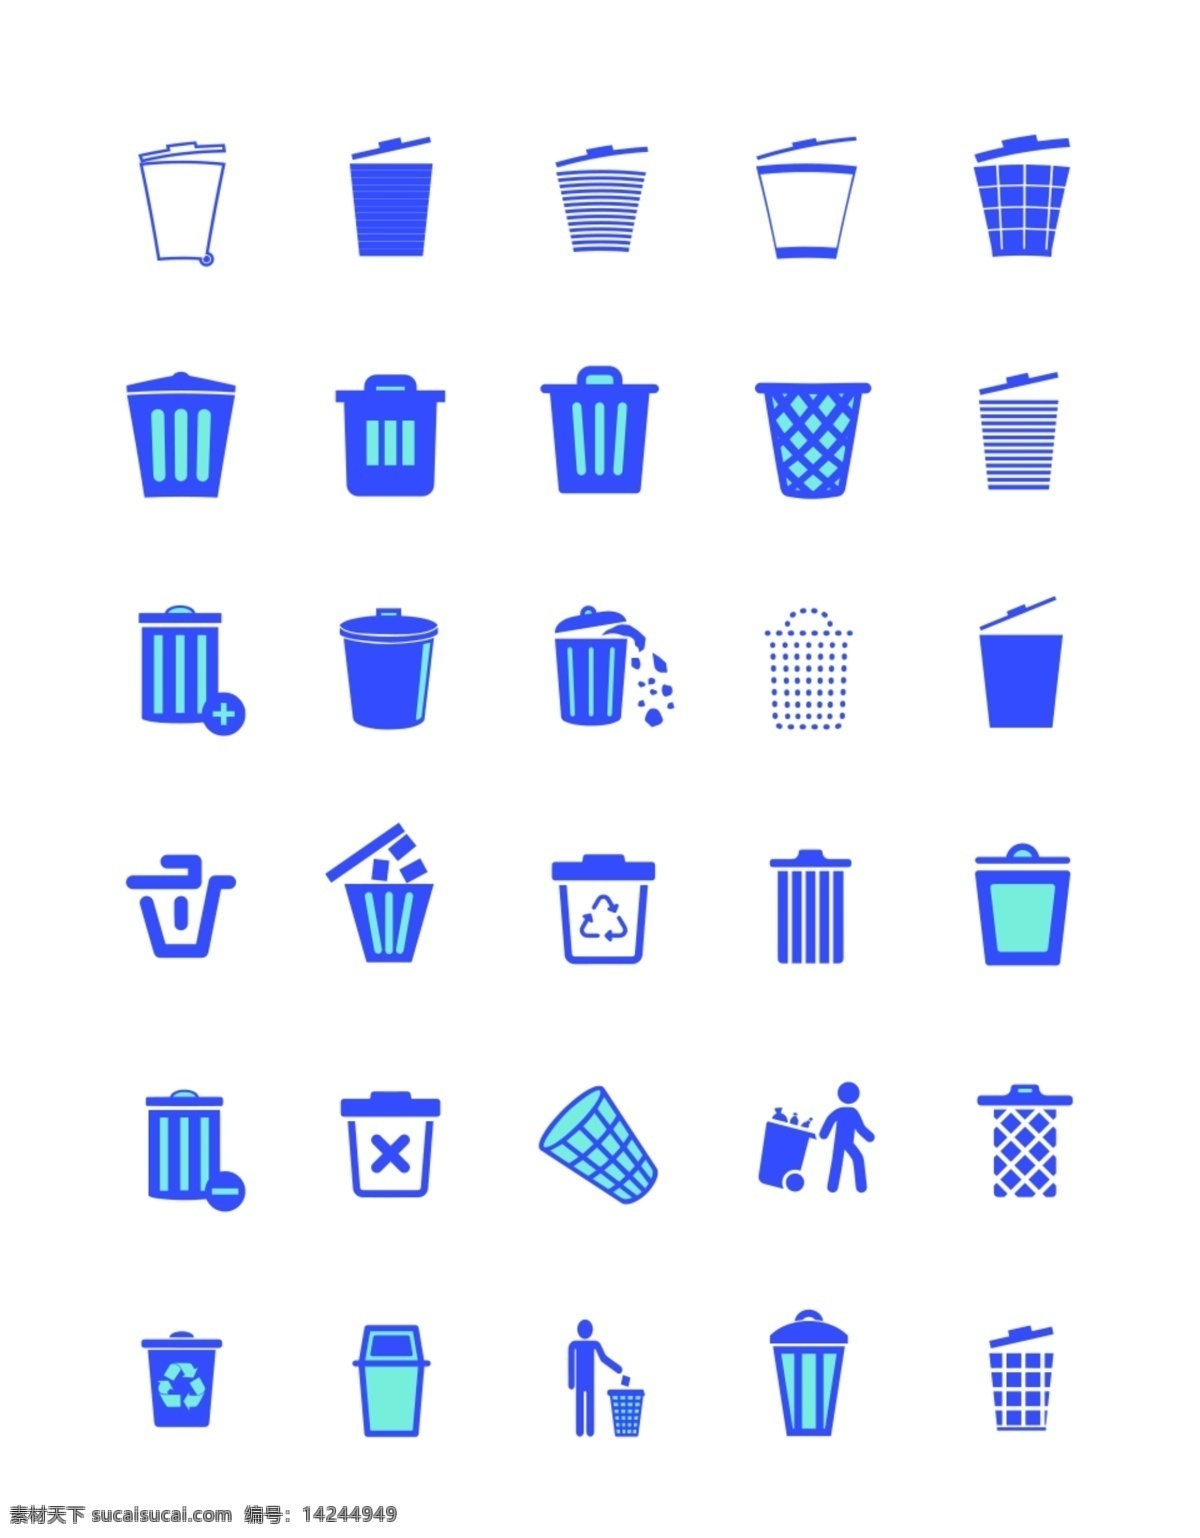 png素材 透明素材 抠图 png抠图 垃圾桶 桶 垃圾 回收桶 垃圾分类 塑料垃圾桶 卡通回收站 卡通垃圾桶 回收站图标 垃圾桶图标